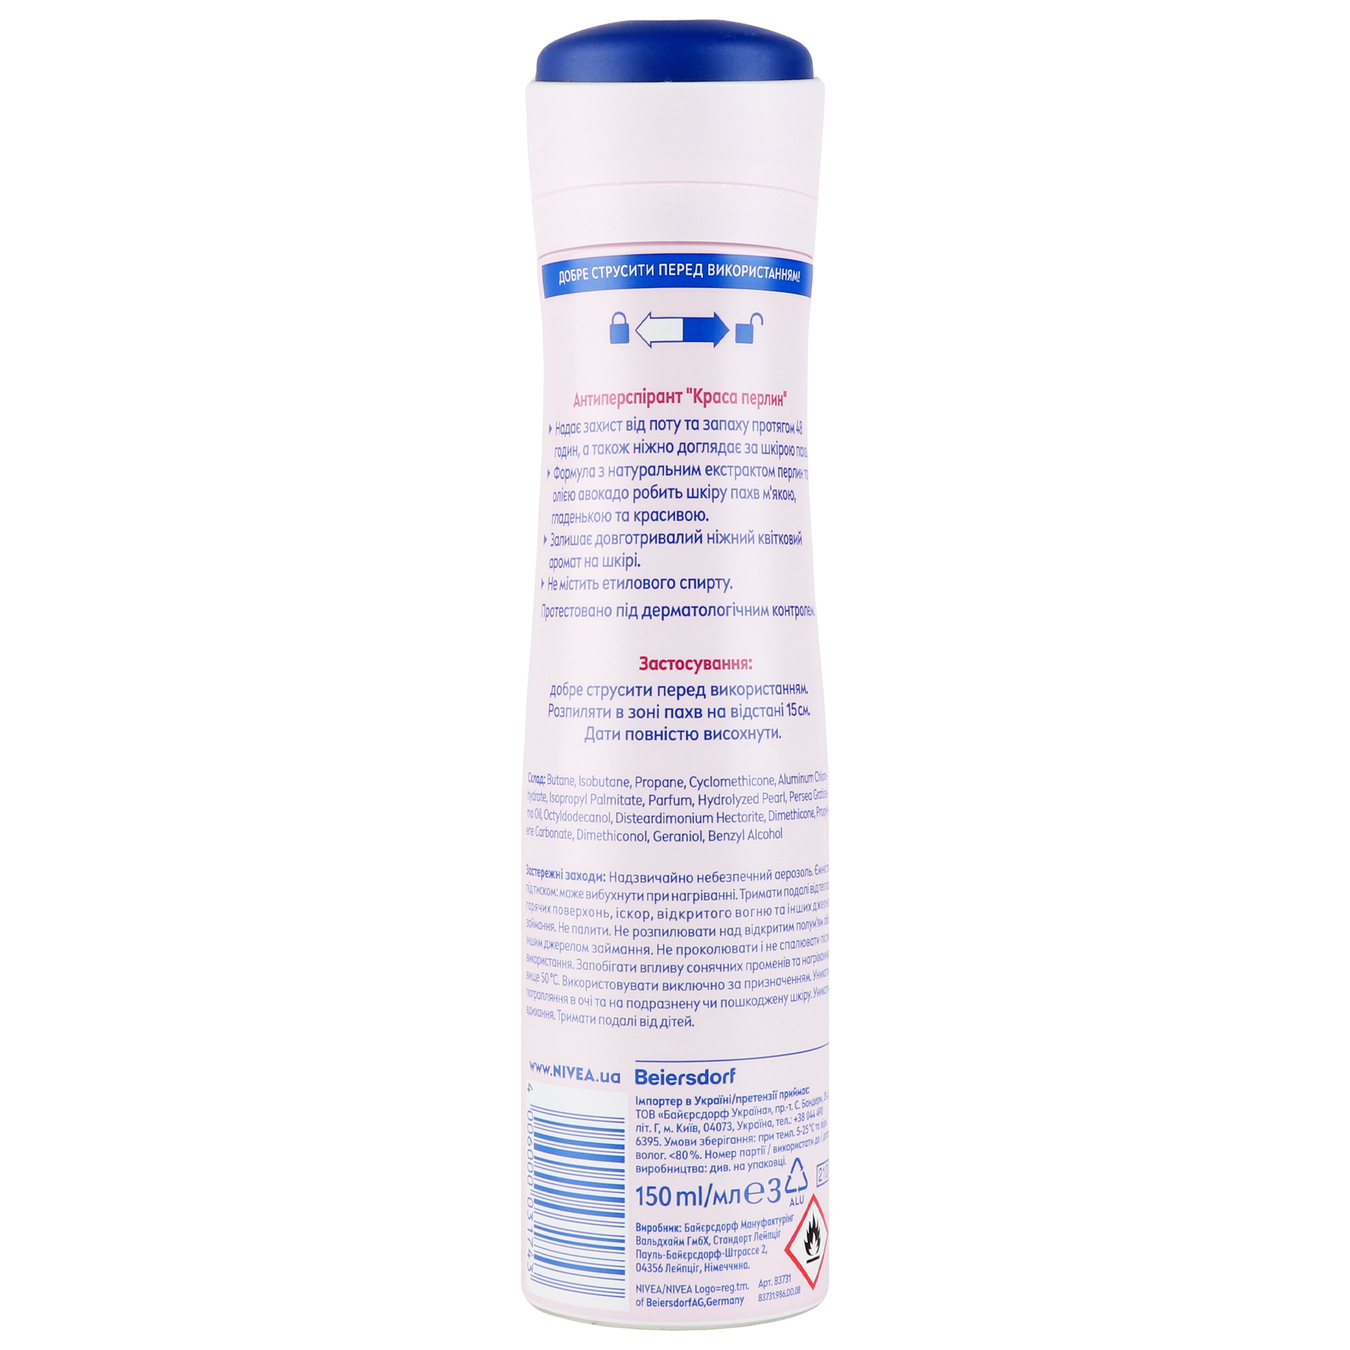 Deodorant Nivea Pearl beauty spray 150ml 2